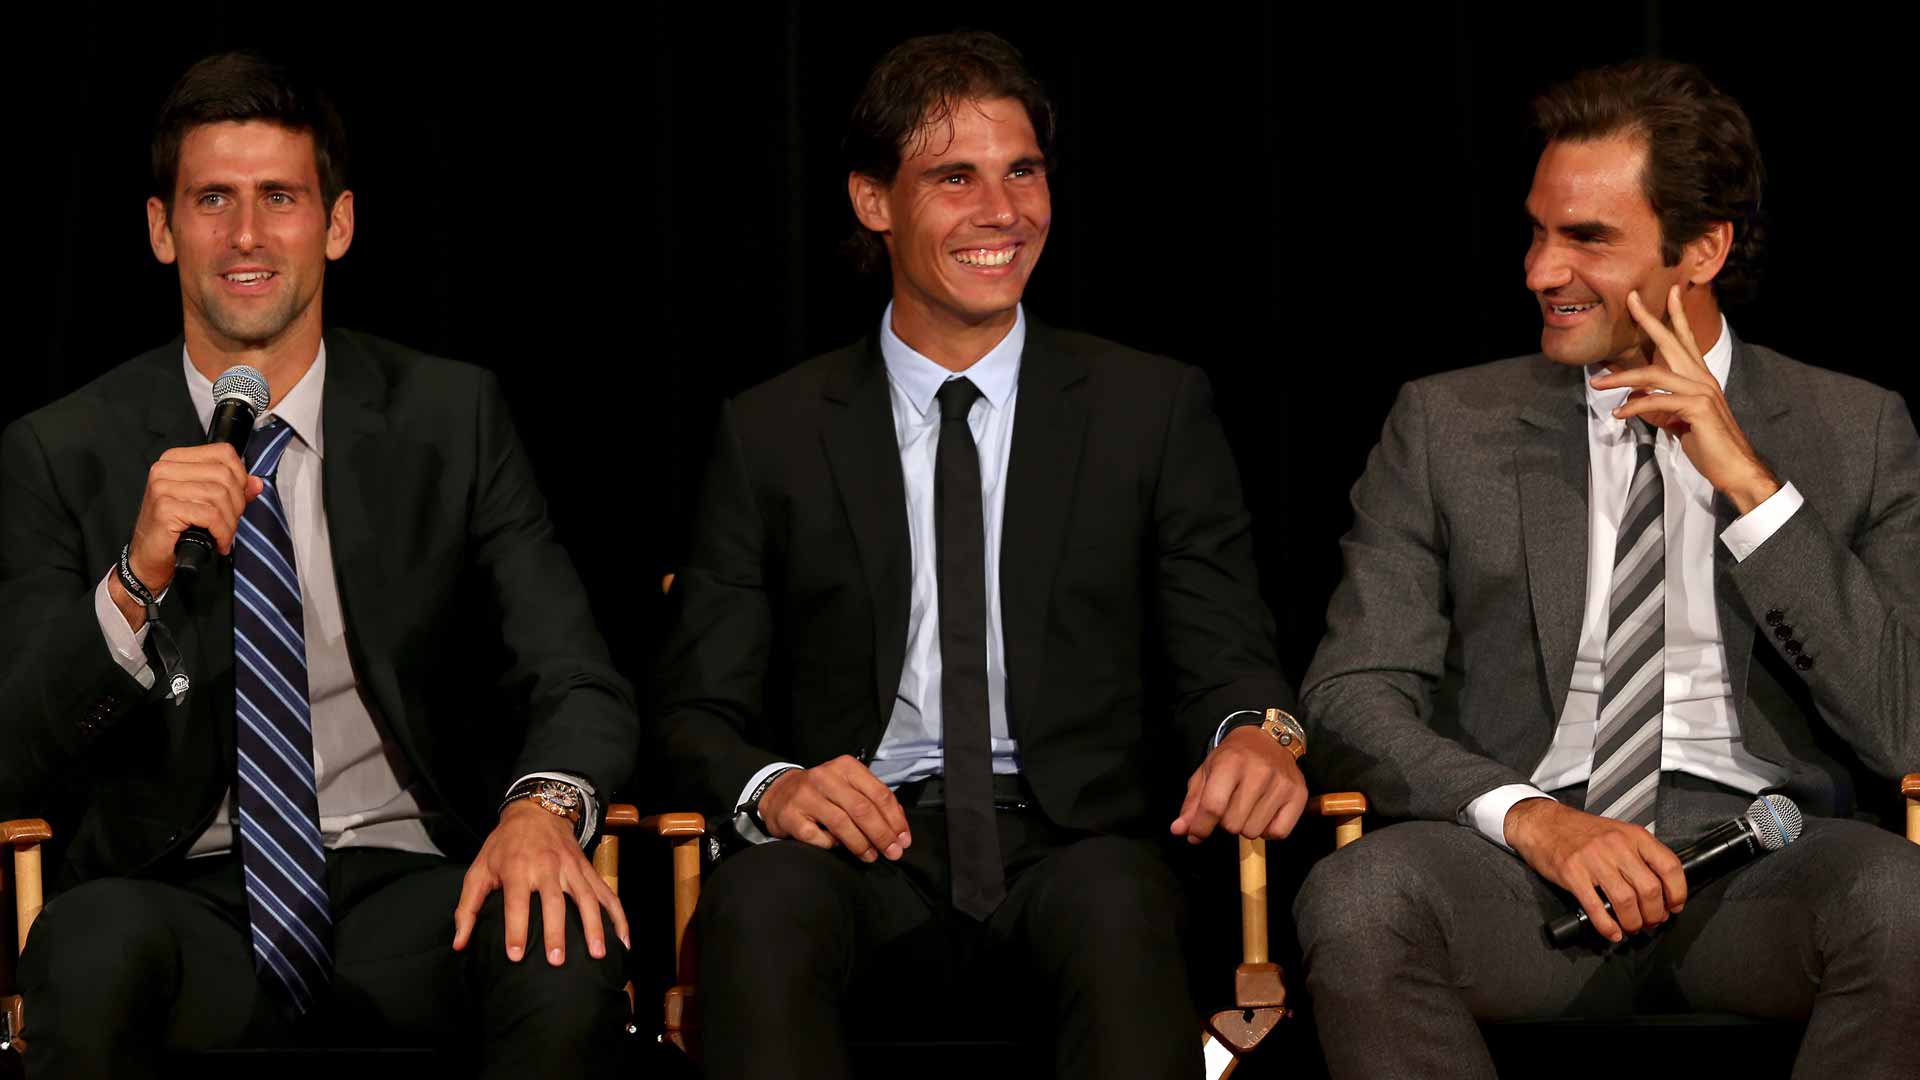 Le carriere di Federer, Djokovic e Nadal a livello juniores: il confronto